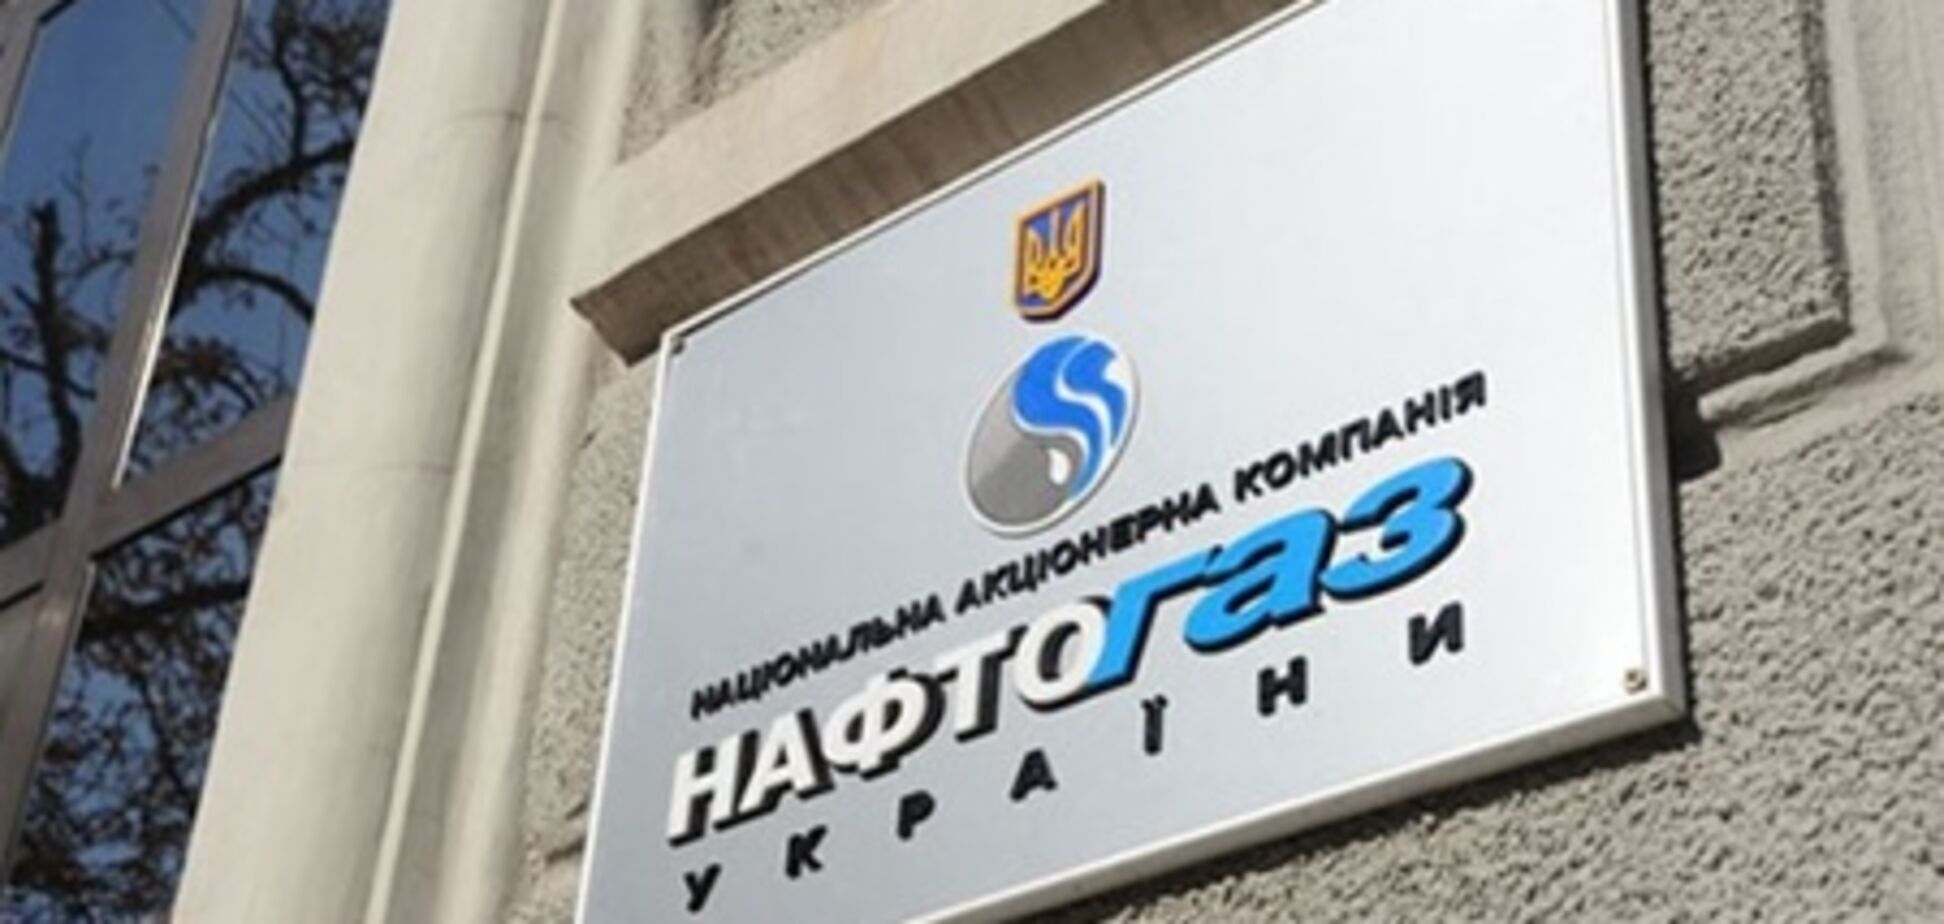 Источник: Украина вовремя уведомила 'Газпром' о снижении закупок газа